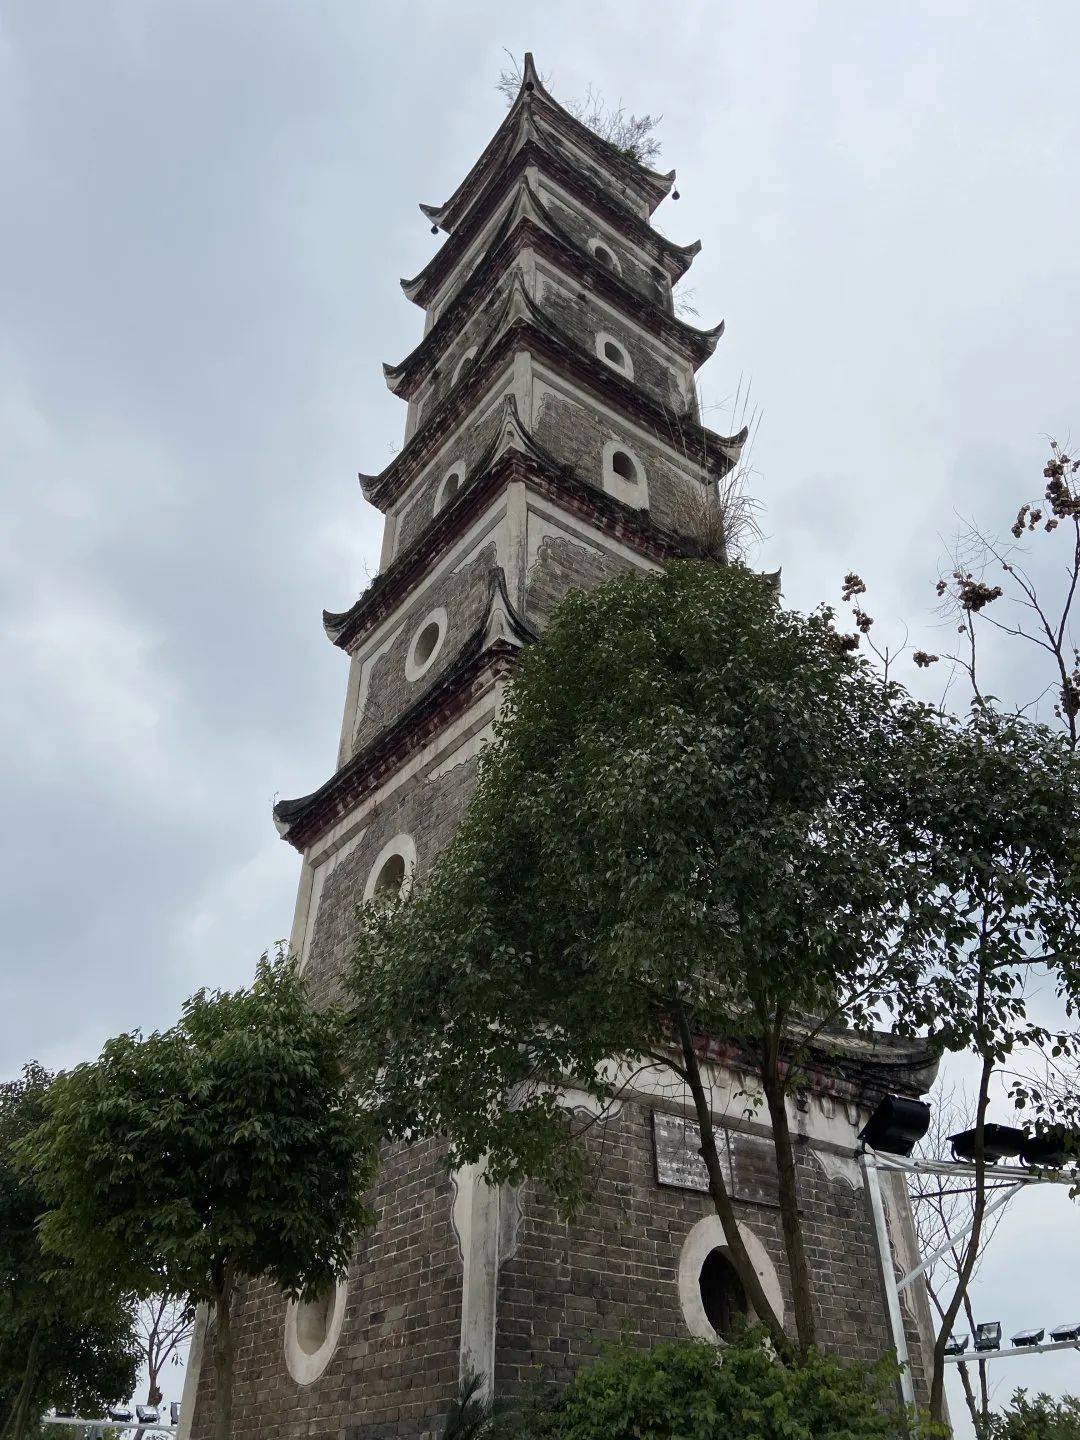 资中三元塔是唐明渡双塔之一,位于资中县重龙镇泥巴湾社区二社,2007年